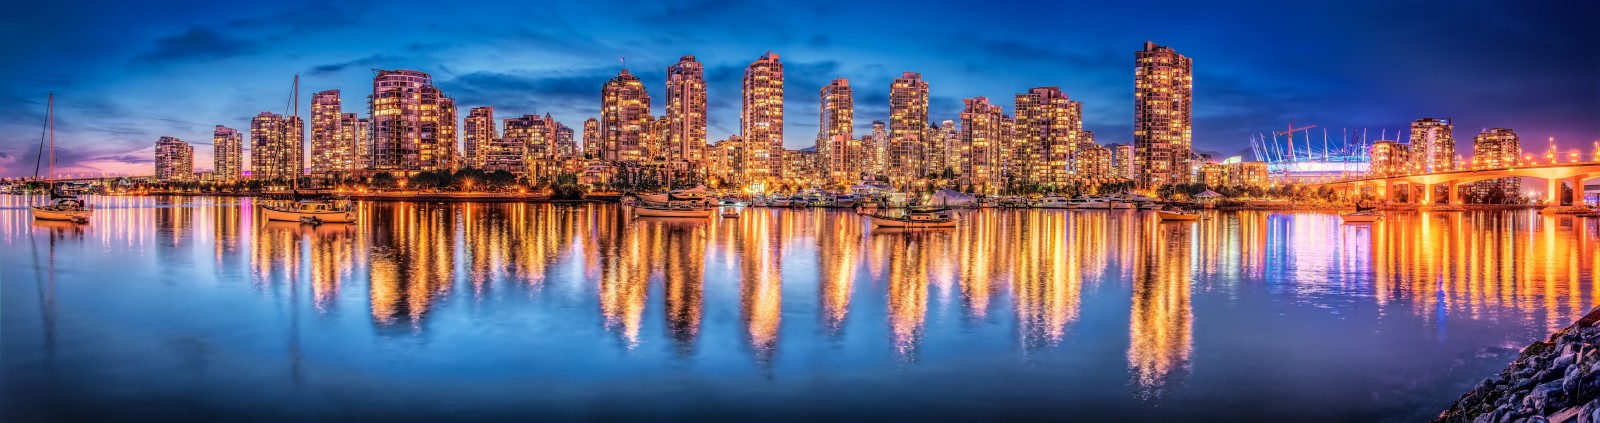 du thuyền, Thành phố đêm, phản ánh, Canada, bức tranh toàn cảnh, xây dựng, British Columbia, Vancouver